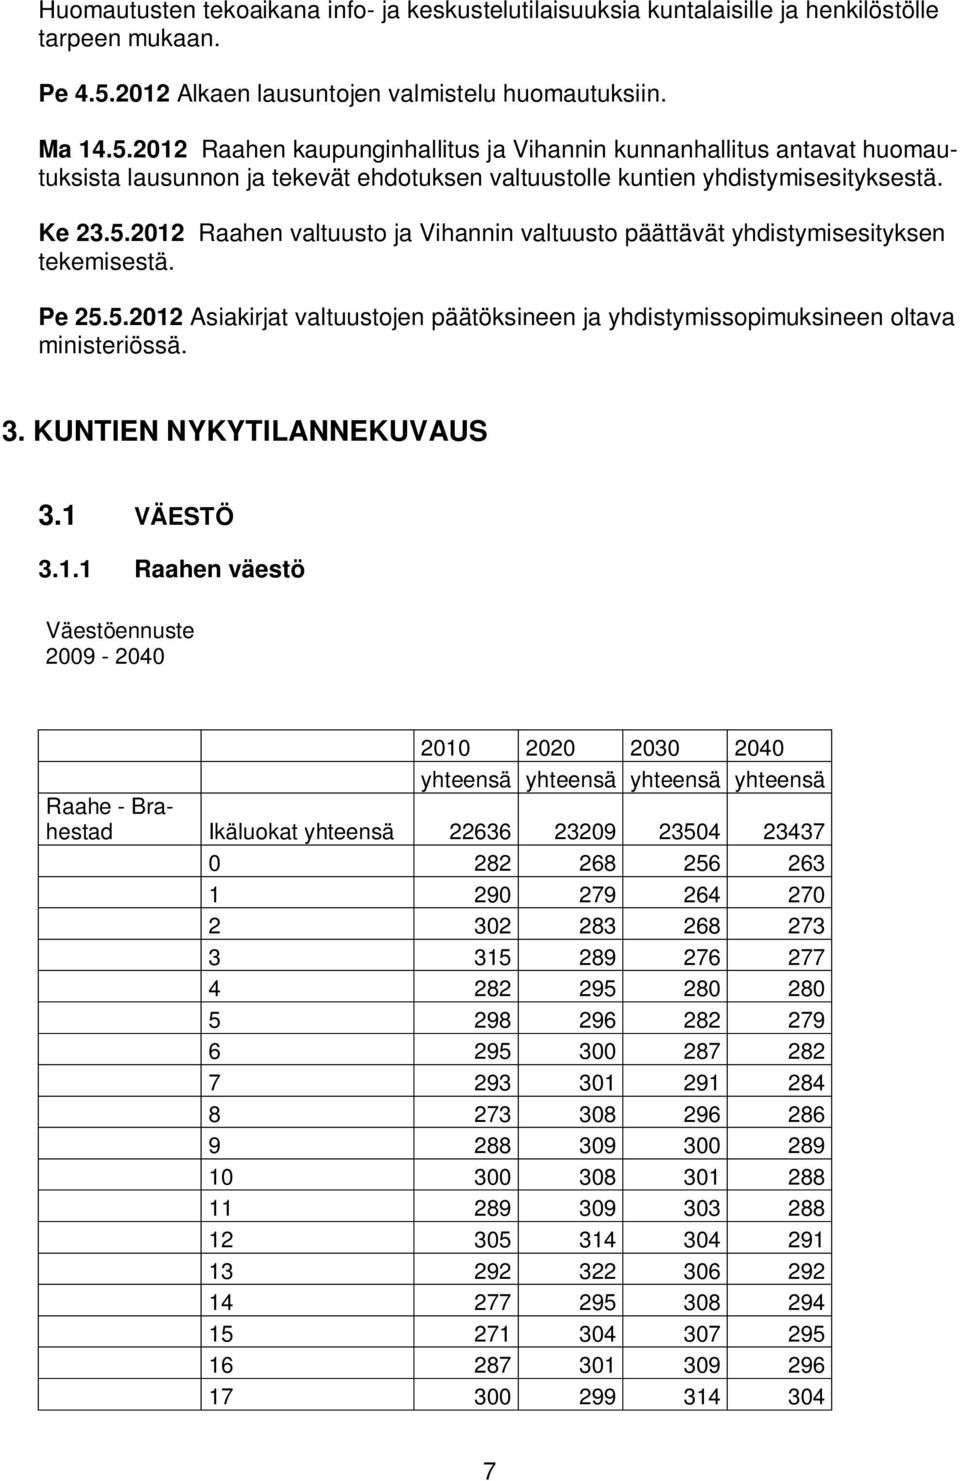 2012 Raahen kaupunginhallitus ja Vihannin kunnanhallitus antavat huomautuksista lausunnon ja tekevät ehdotuksen valtuustolle kuntien yhdistymisesityksestä. Ke 23.5.